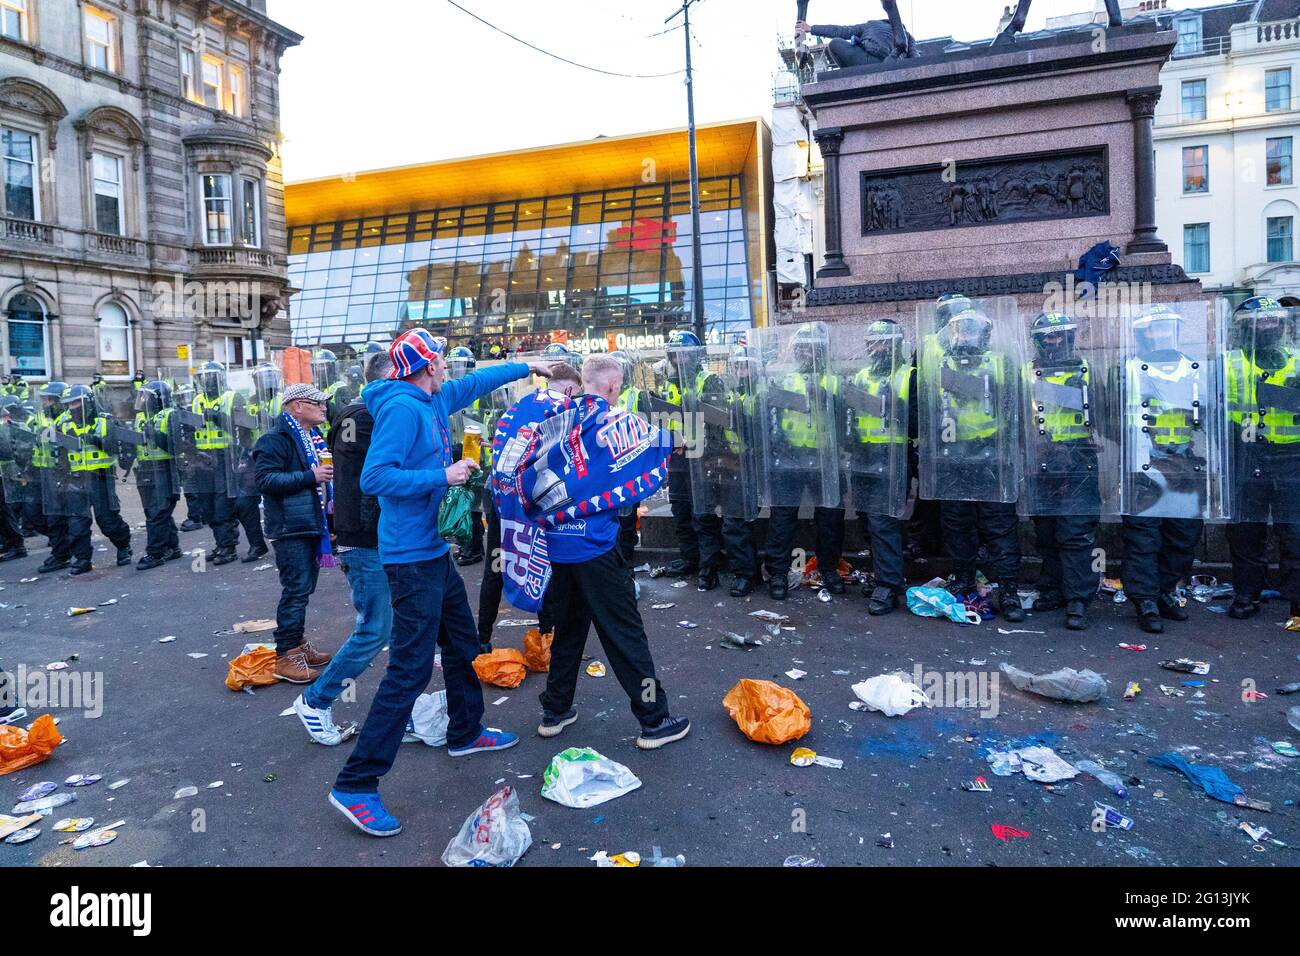 Scènes de George Square à Glasgow après la victoire des Rangers à la 55e ligue avec la police anti-émeute essayant d'effacer les fans Ecosse, Royaume-Uni Banque D'Images